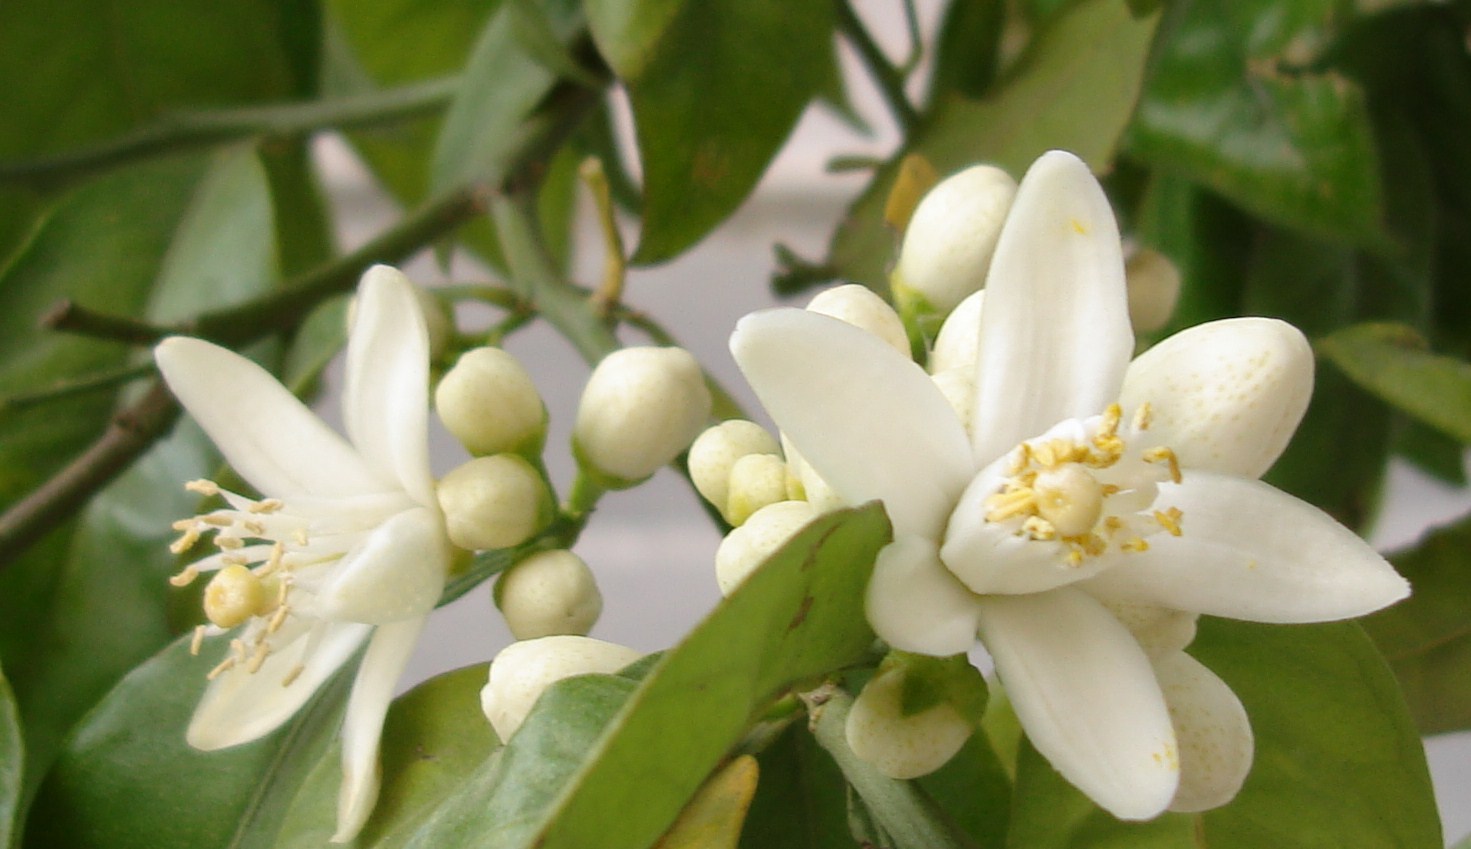 La flor de azahar, un remedio casero contra el estrés y el insomnio